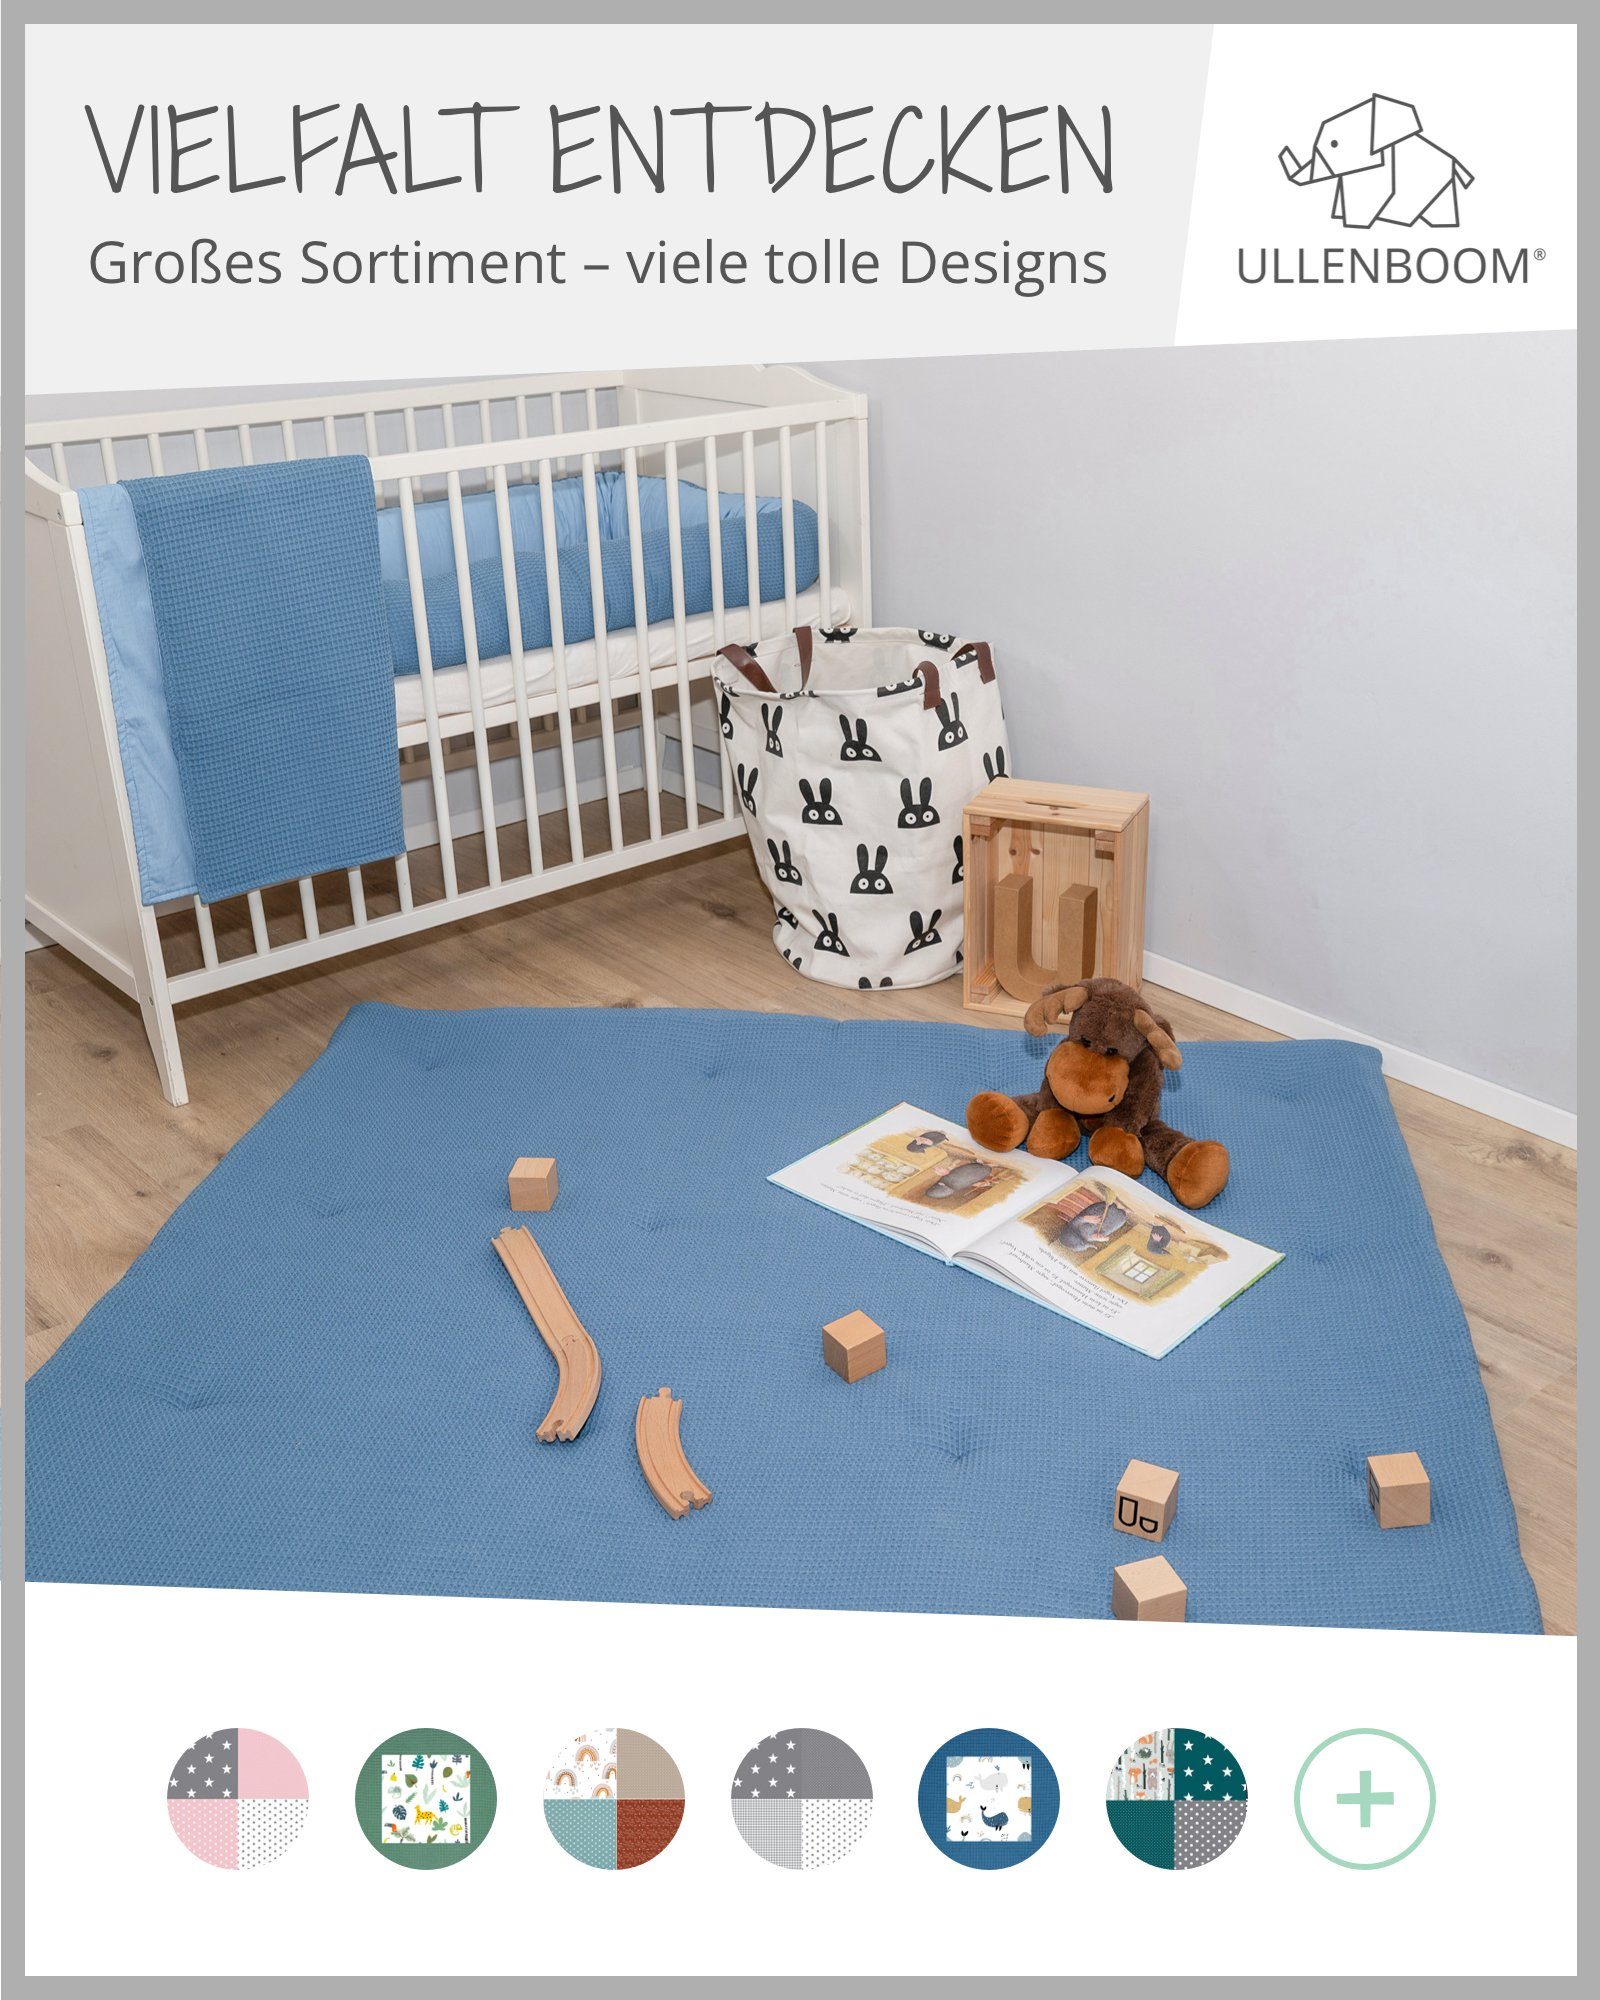 & (Made EU, Made cm Babydecke Baumwolle, Uni Kinderwagendecke ®, Aus Design: Babydecke 70x100 Blau EU), als in hochwertiger ULLENBOOM Spieldecke in